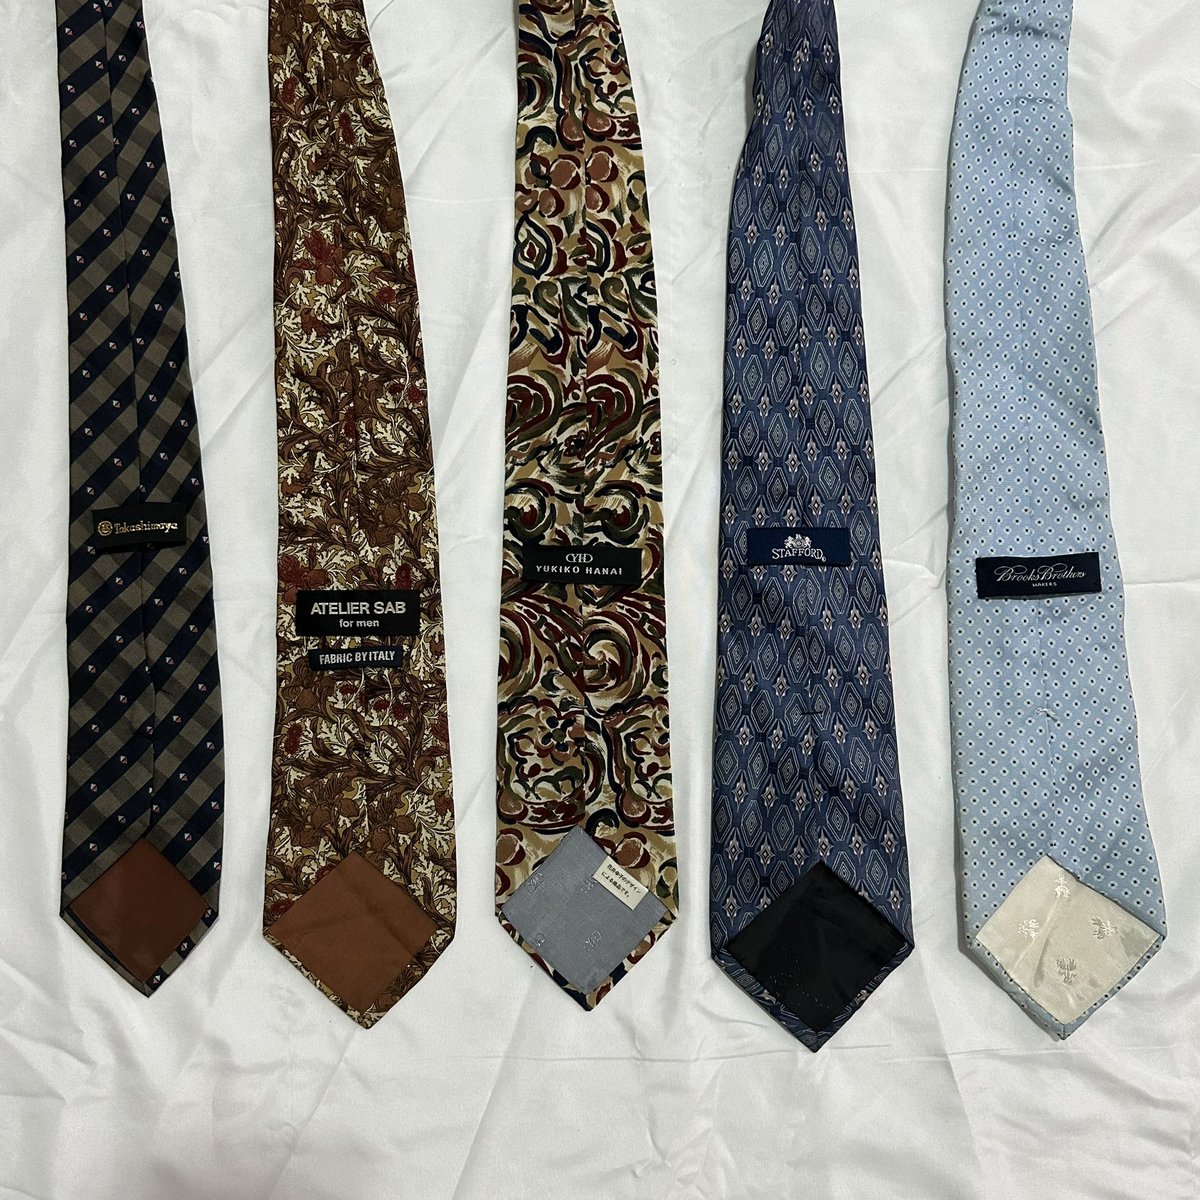 เนคไท มือสอง 💐 35 บาท

• WA06
• WA07
• WA08
• WA09
 • WA10

เรียงลำดับตามภาพได้เลยค่ะ 

สินค้าว่างไม่มีเจ้าของ #necktiewinksว่างอยู่

#y2kthailand #เนคไท #necktie 
#ส่งต่อเสื้อผ้ามือสอง #ส่งต่อเสื้อมือสอง #เสื้อผ้ามือ2 #เสื้อผ้ามือสอง #โล๊ะตู้ #ส่งต่อเสื้อผ้ามือสองสภาพดี